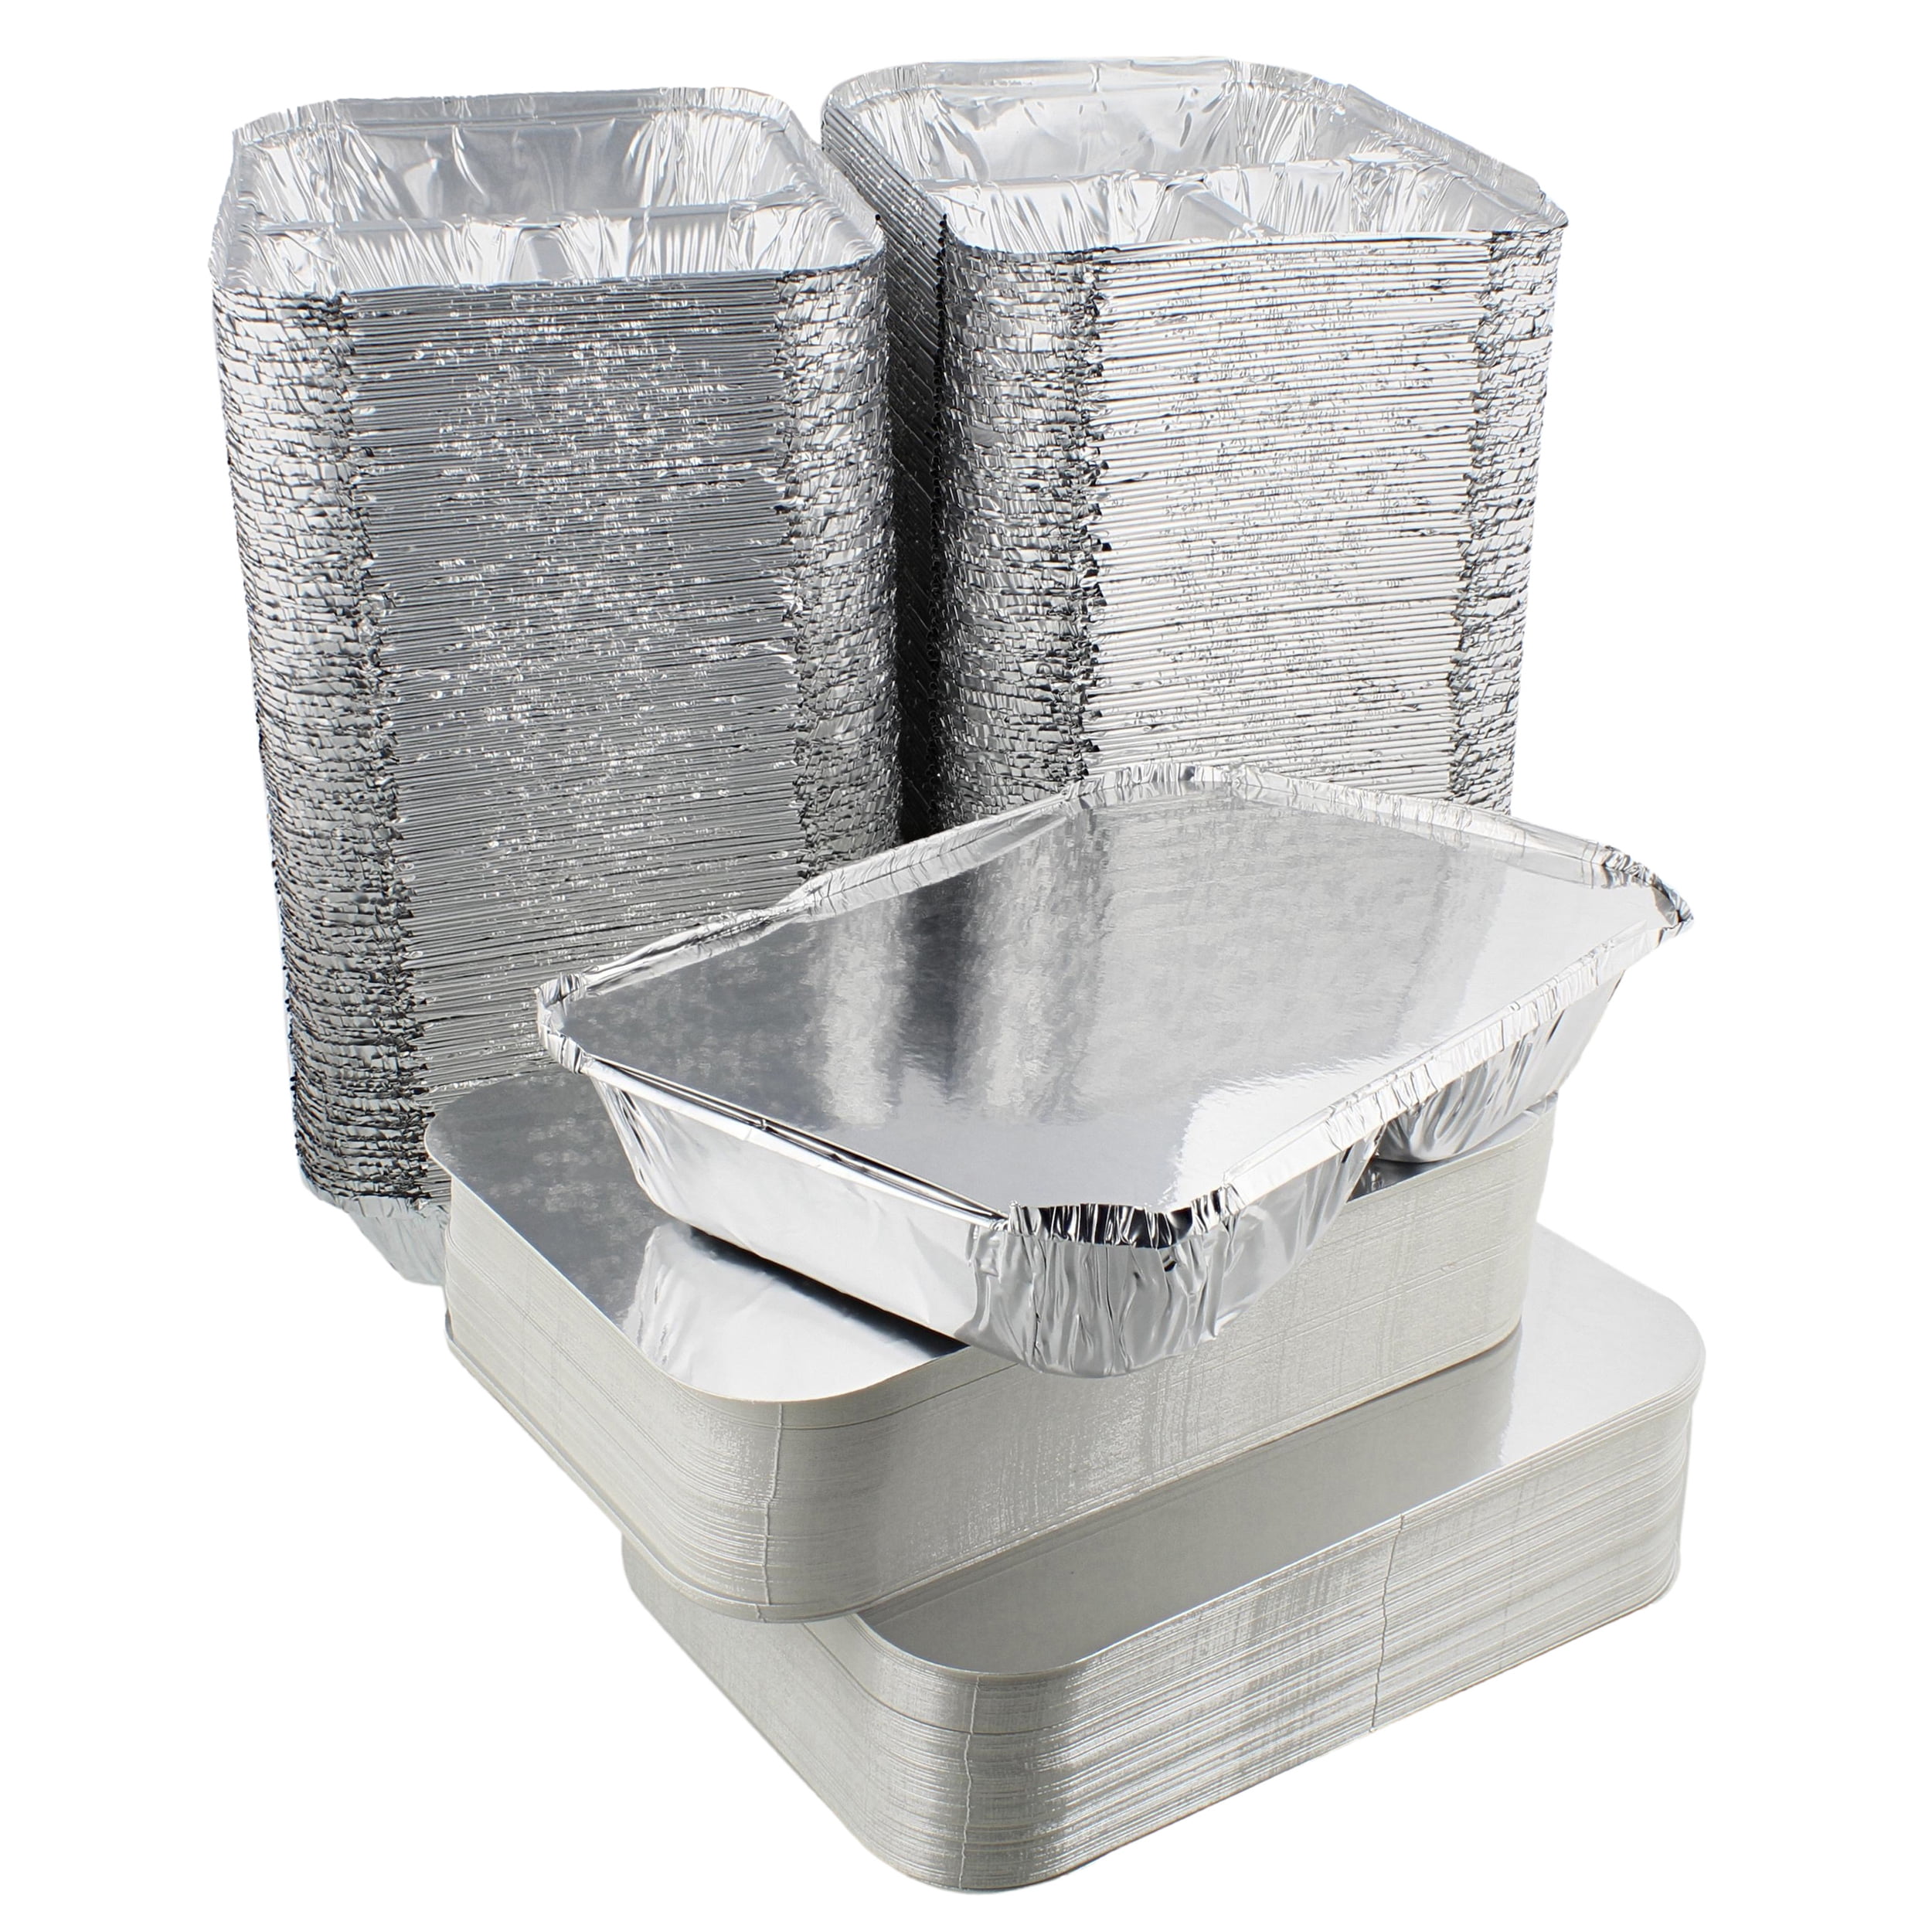 LEUCHTEN 40 Packs Small Disposable Aluminum Container Pans Foil